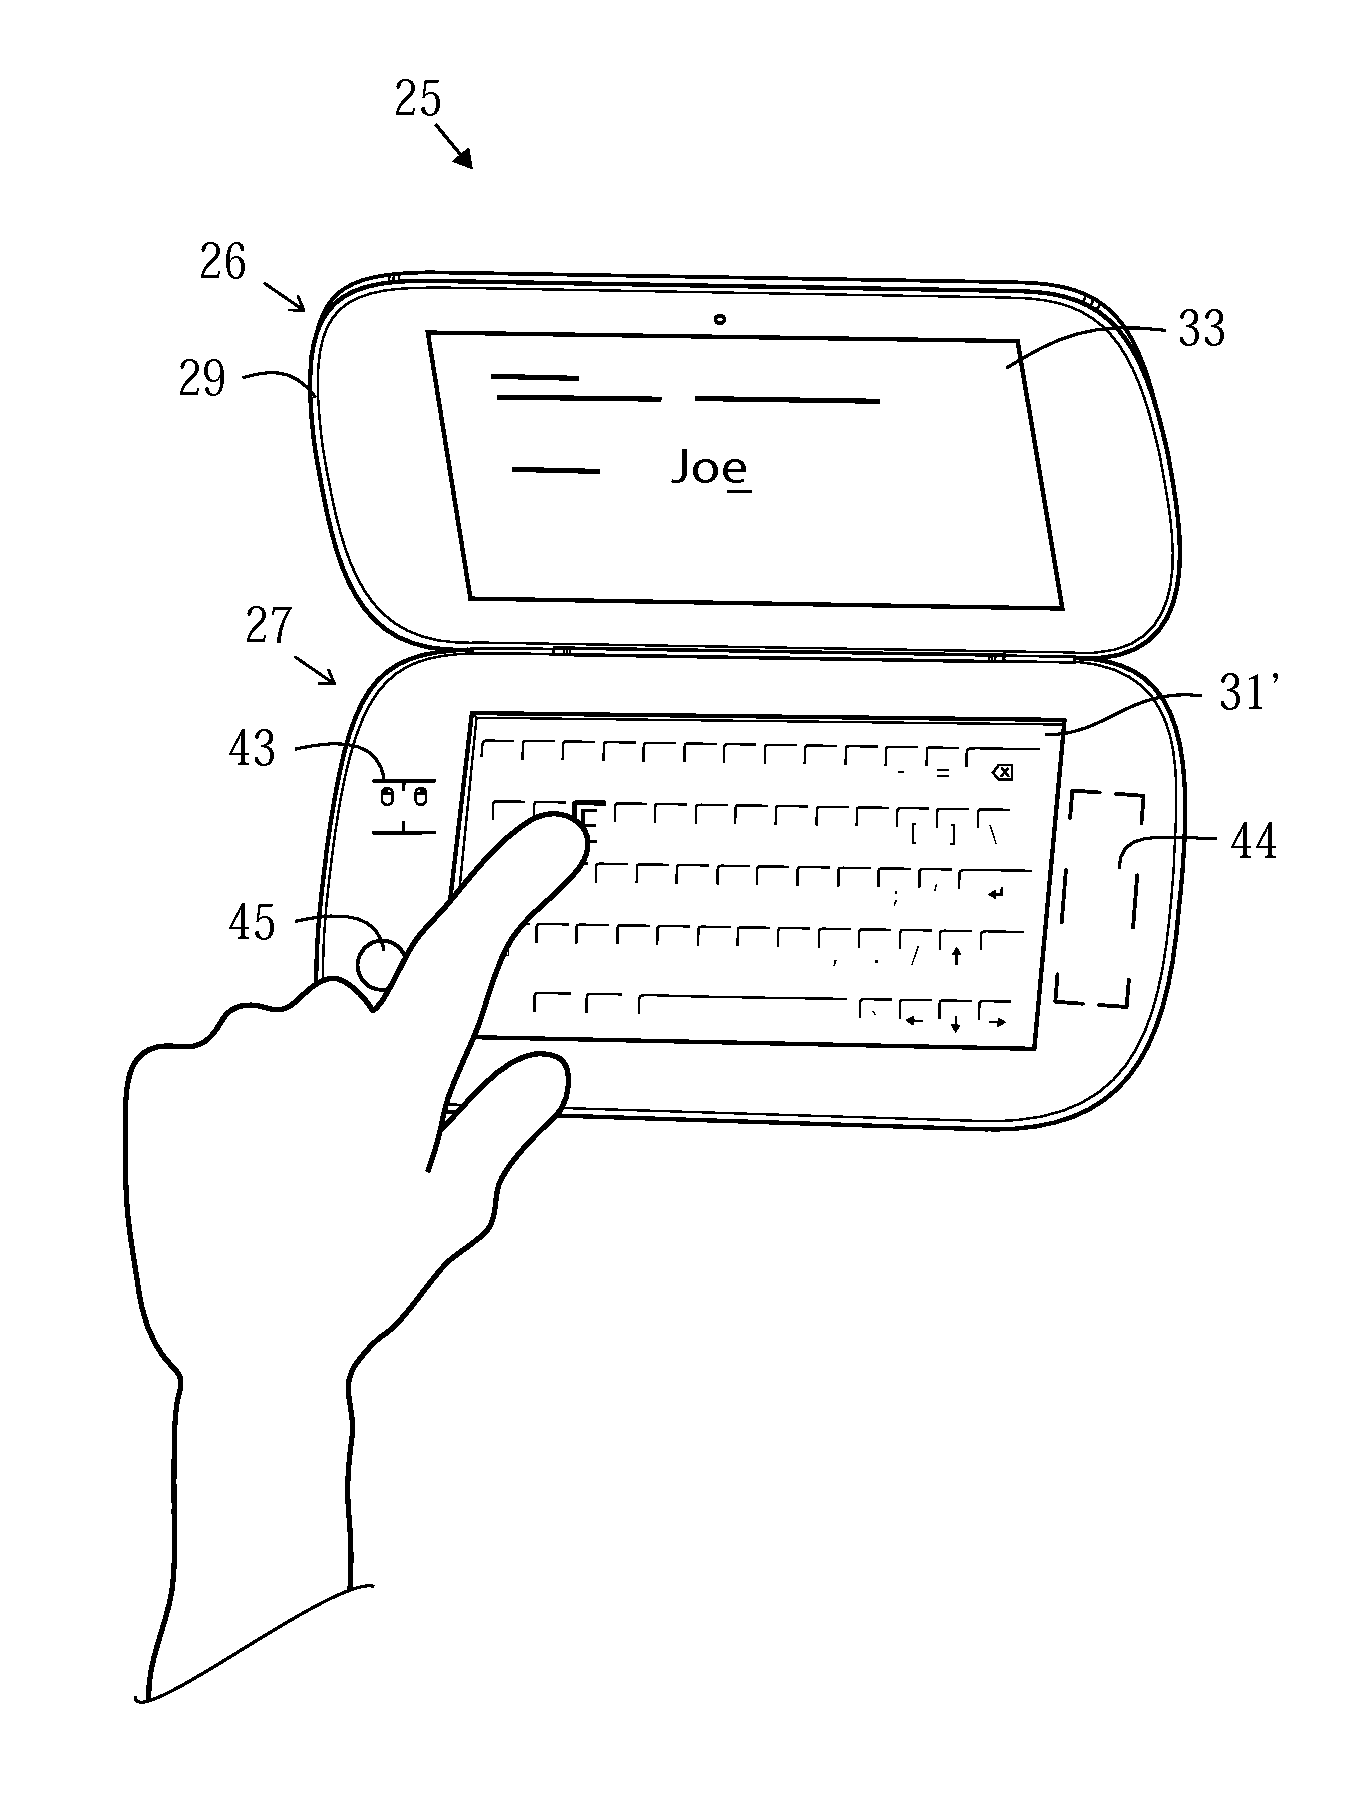 Touchscreen with a light modulator